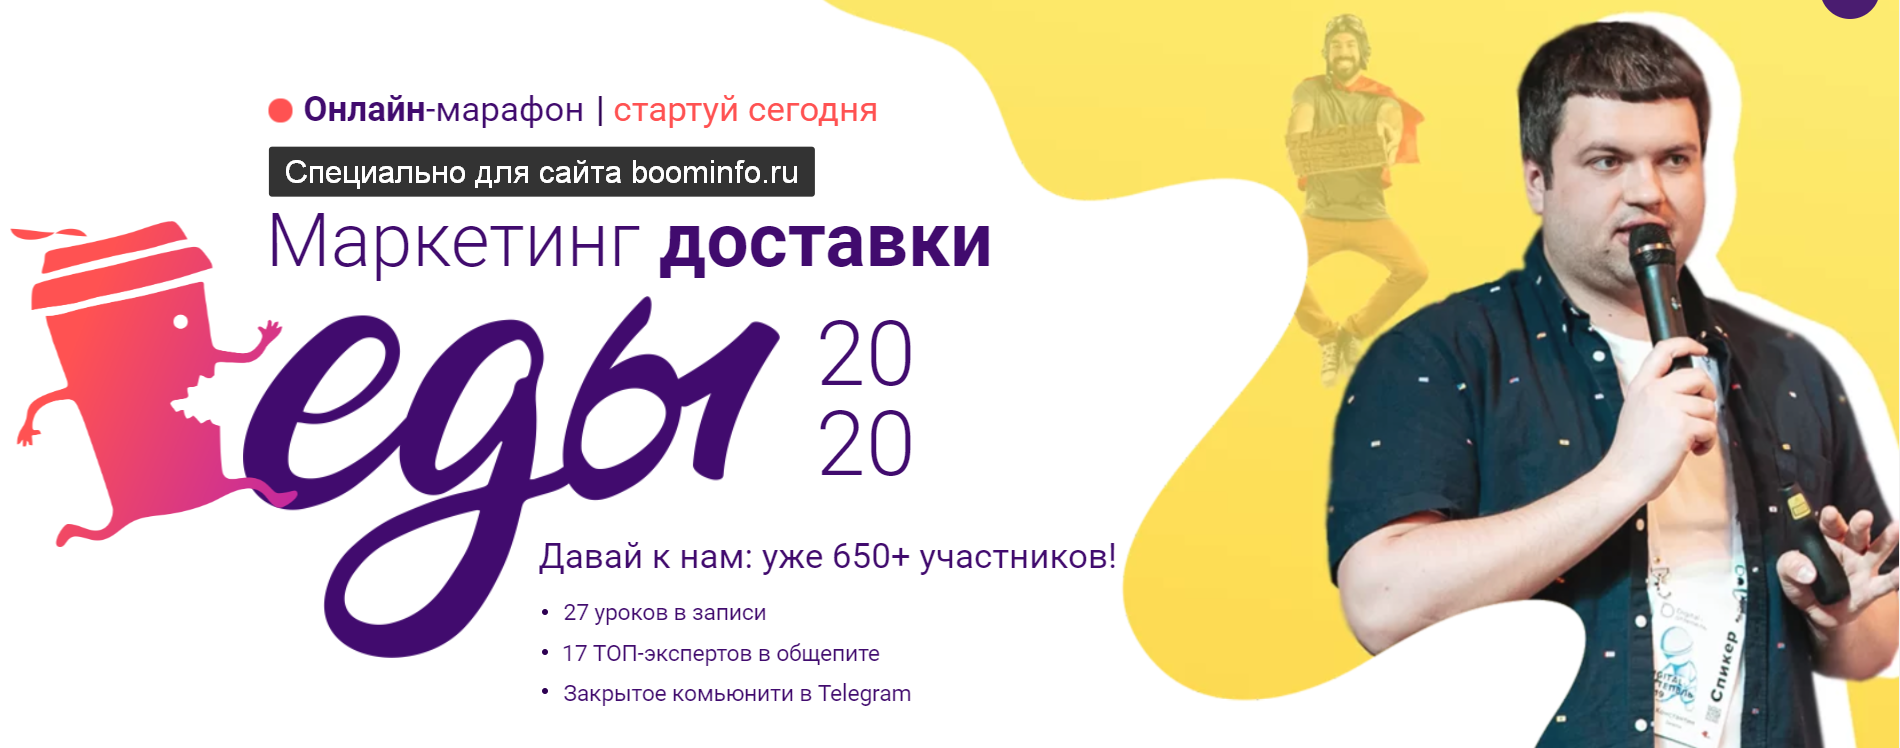 marketing-dostavki-edy-2020-onlajn-marafon-konstantin-zimen-nikita-kravchenko-vladimir-locmanov-png.2032